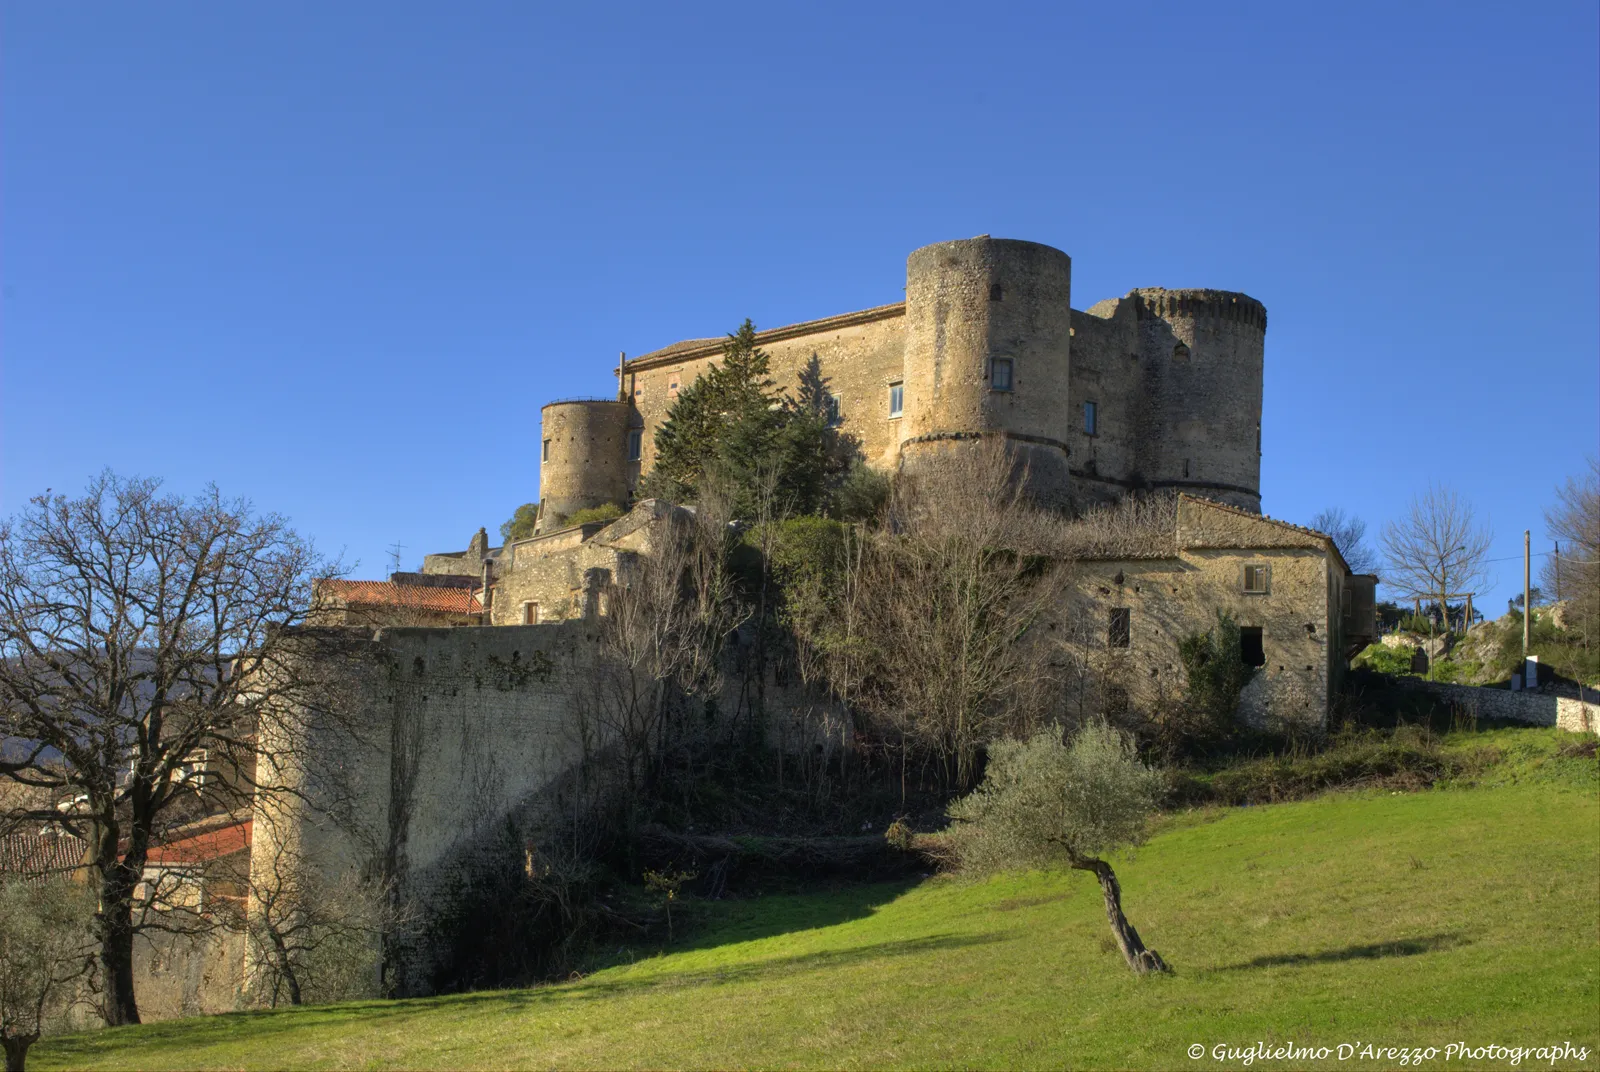 Photo showing: Castello di Prata Sannita, autore Guglielmo D'Arezzo, uso libero con attribuzione.